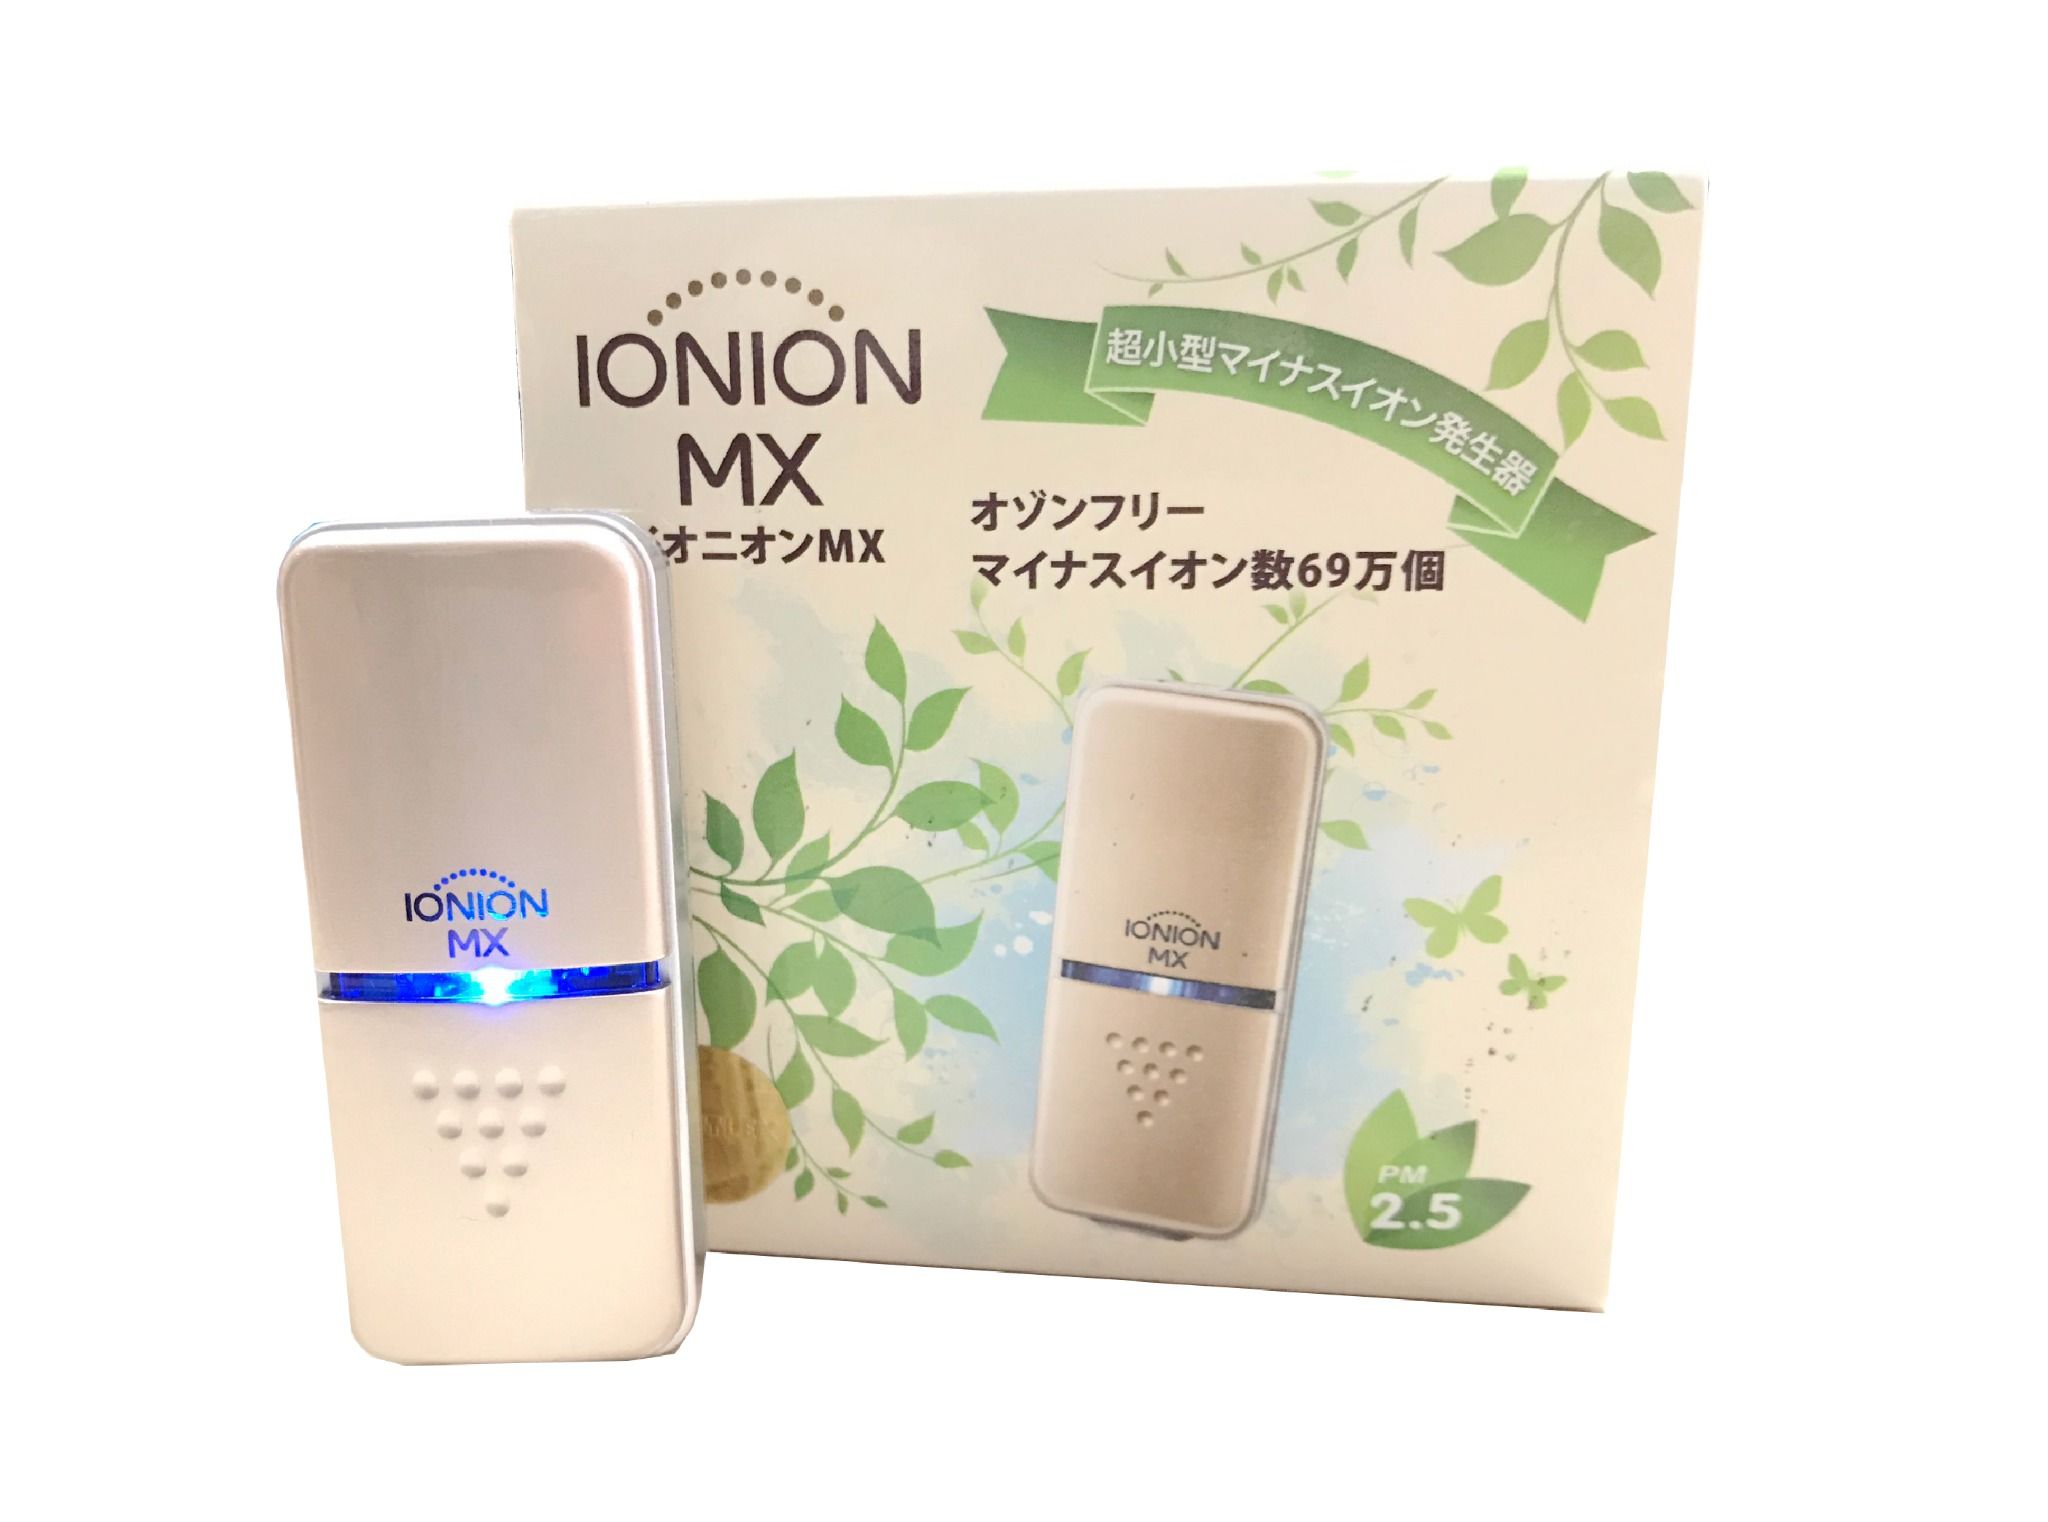  Máy lọc không khí đeo cổ - Ionion MX (Nhật Bản) 